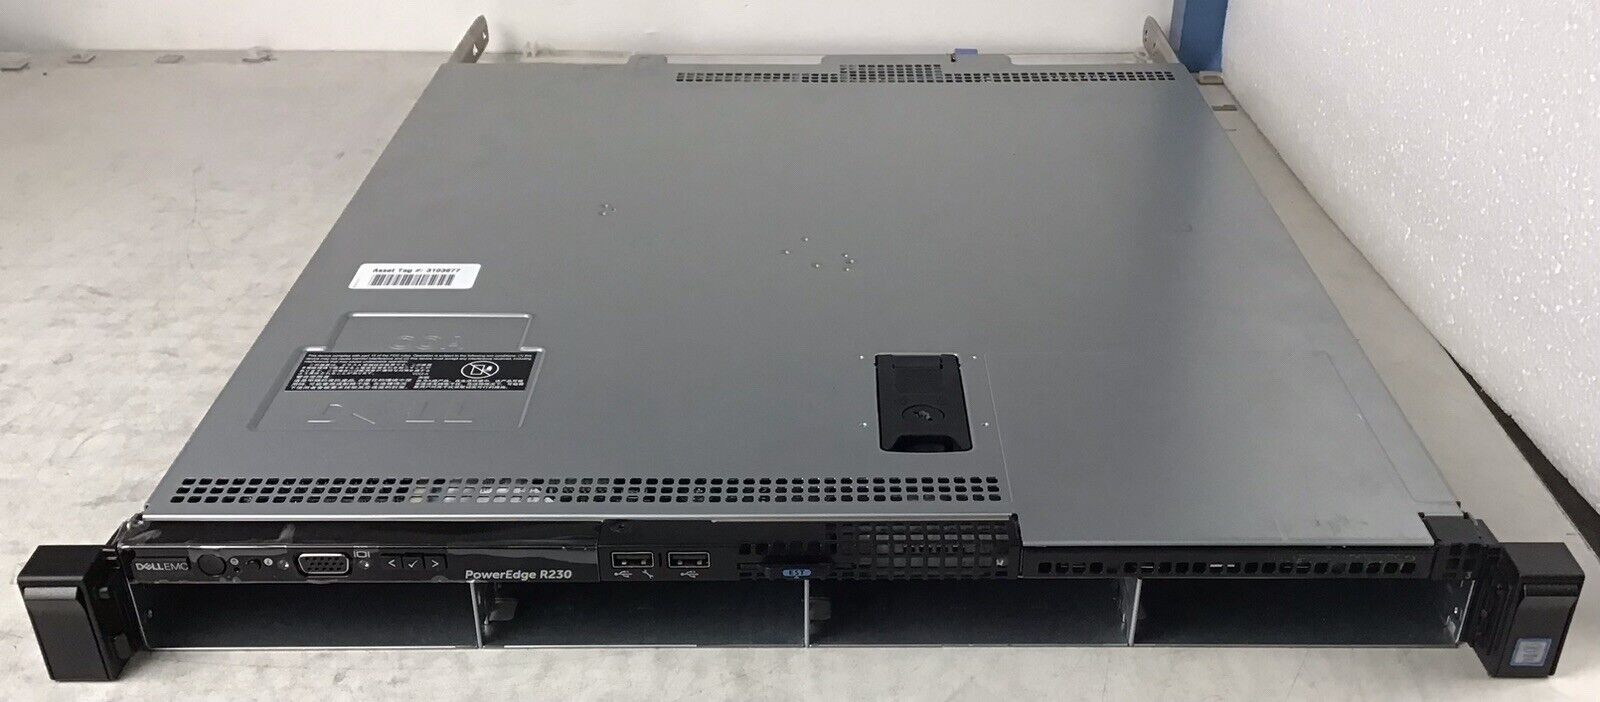 Dell PowerEdge R230 Server Quad Core E3-1230 v5 3.4GHz 32GB RAM No HDDs 250W PSU